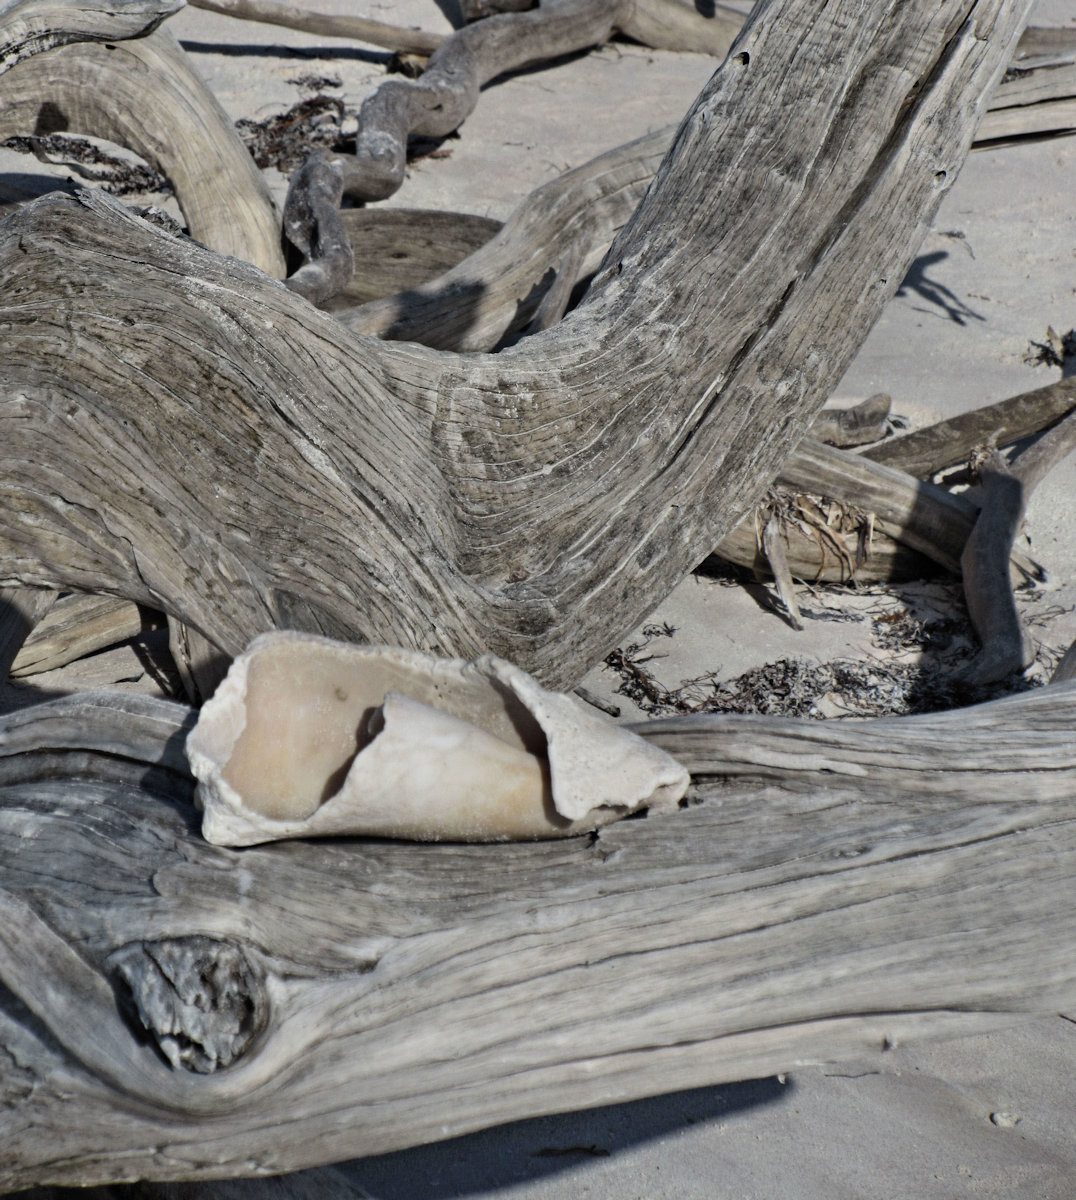 Broken Shell on driftwood - Cuba